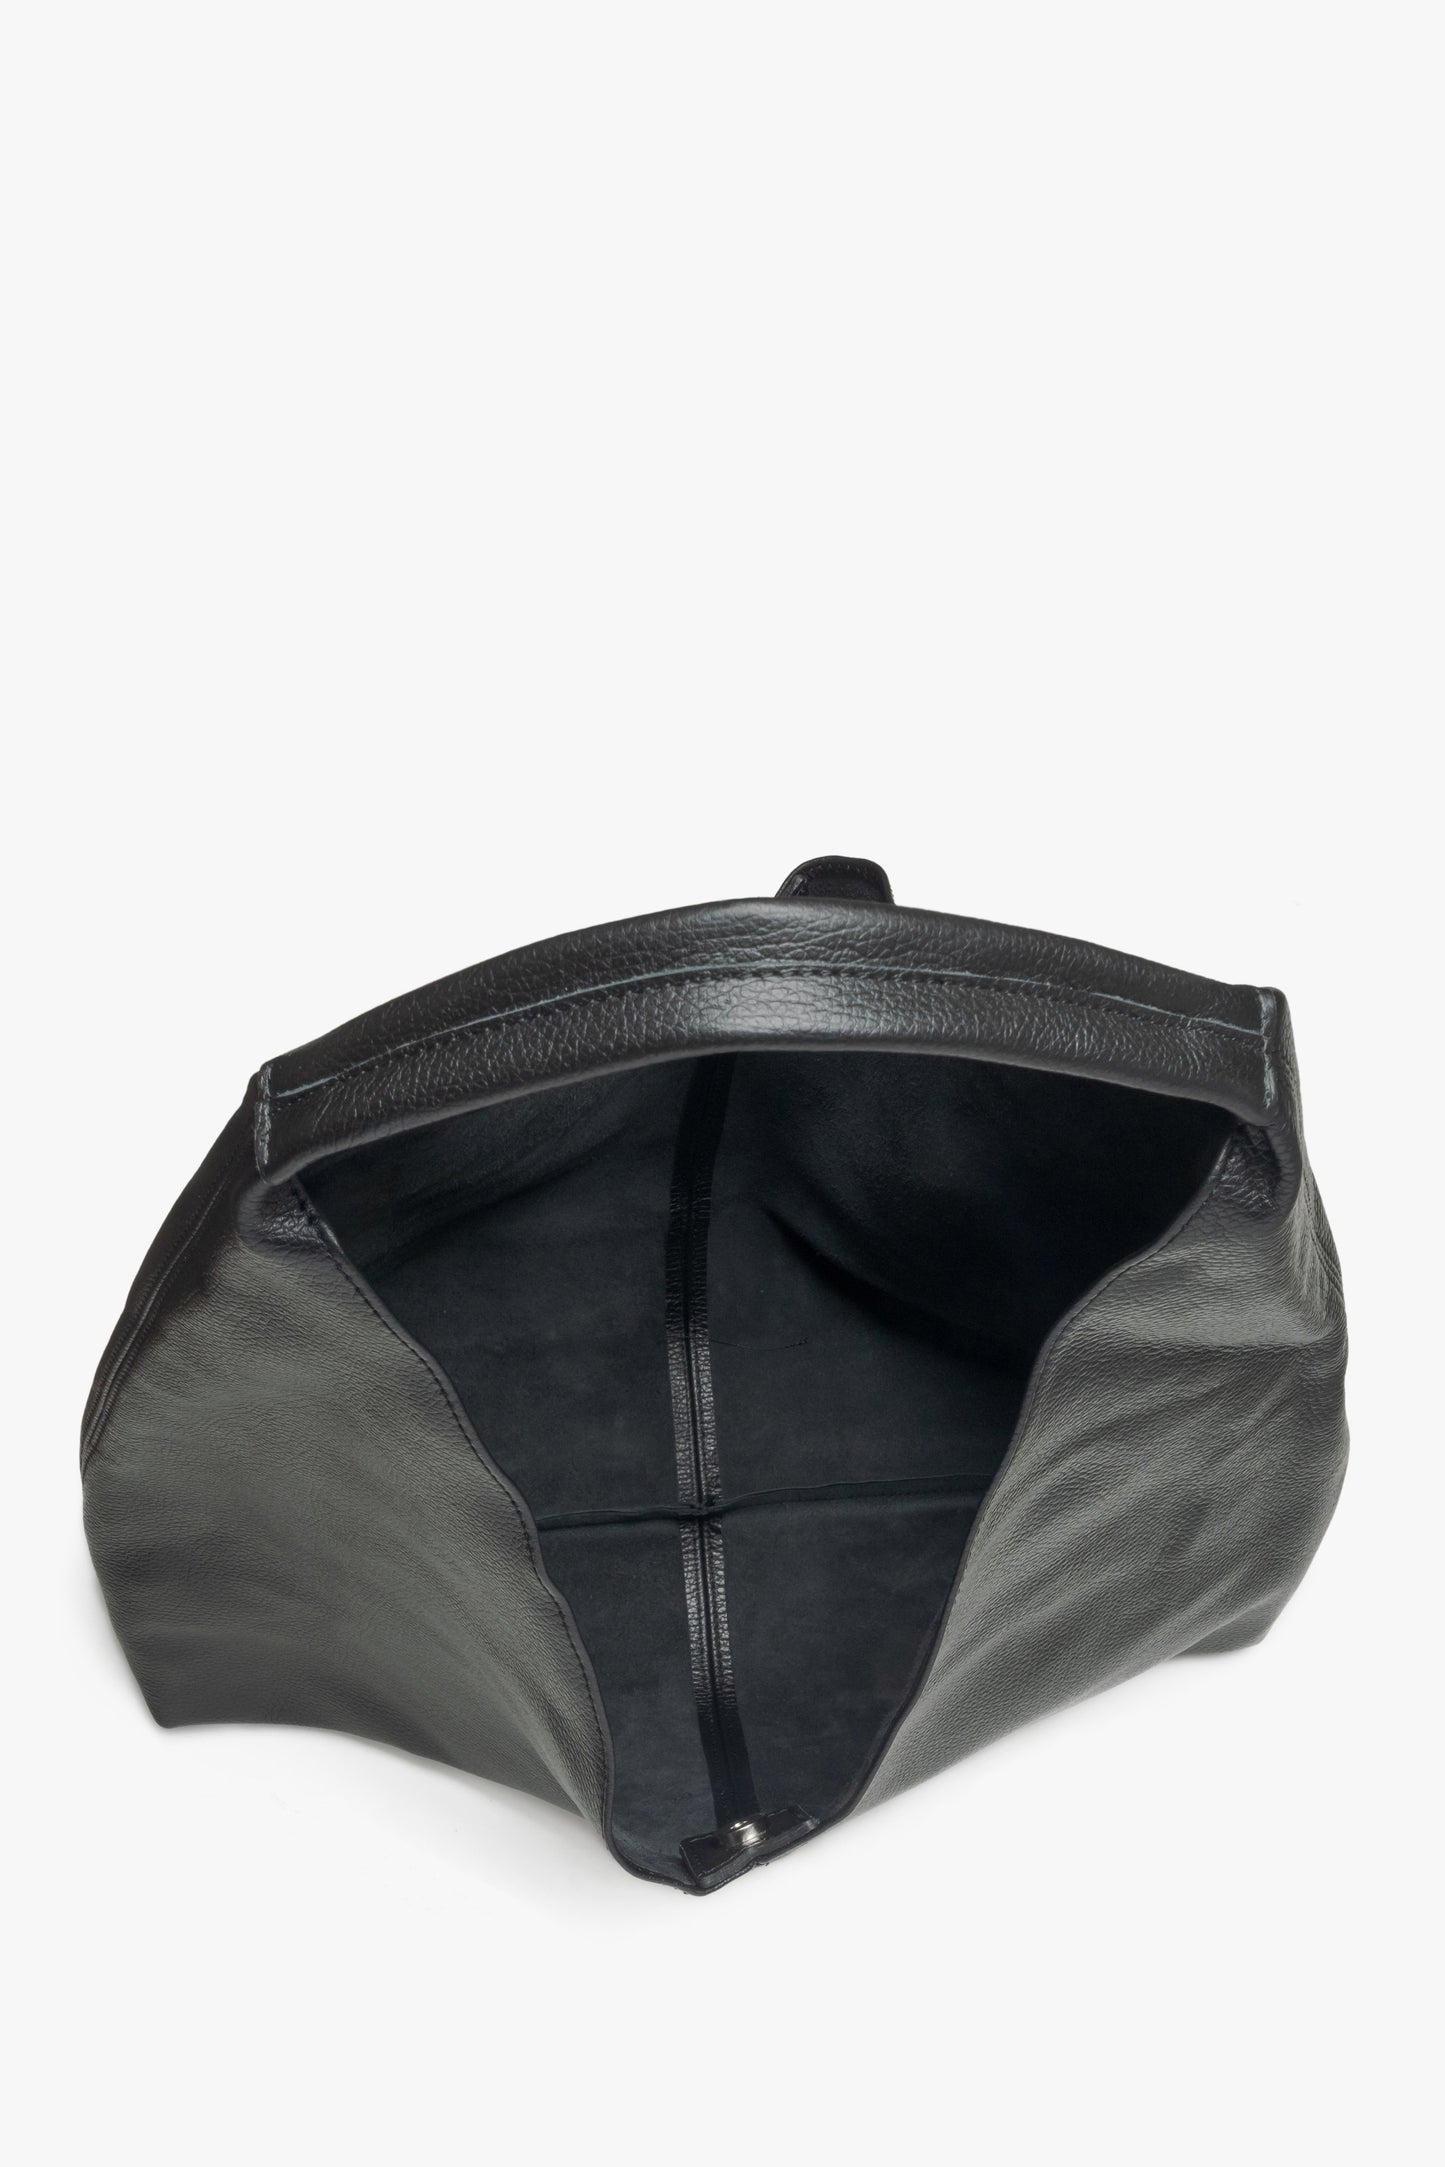 Damska czarna torebka typu hobo marki Estro - zbliżenie na wnętrze modelu.